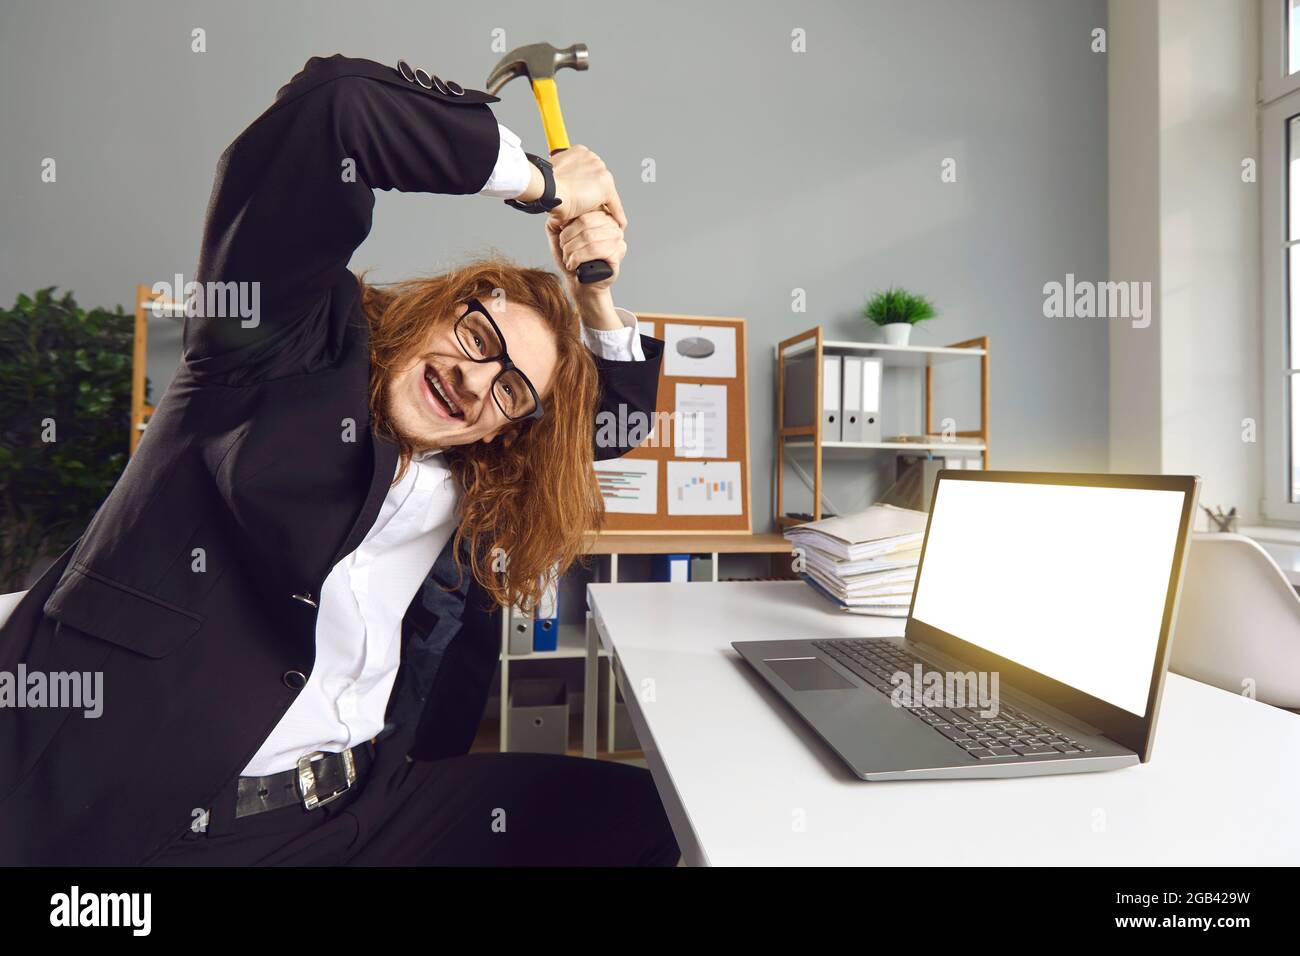 Porträt eines witzigen, verrückten Büroarbeiters, der an einem Schreibtisch  sitzt und mit einem Hammer einen Laptop zerbricht Stockfotografie - Alamy